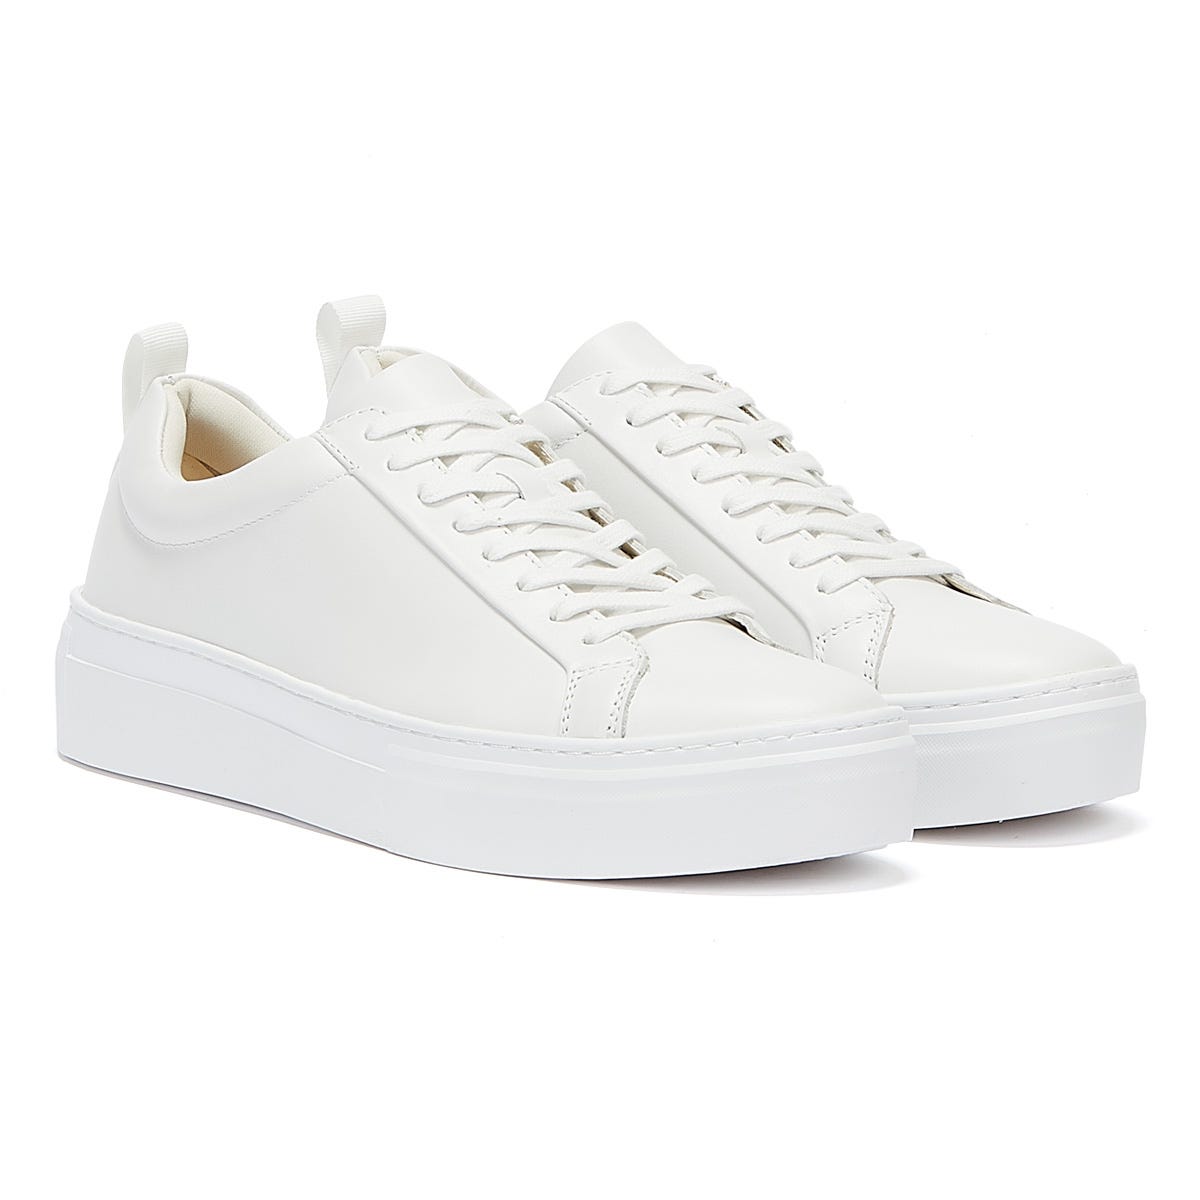 Vagabond 5327-201-01 Zoe Platform - Damen Schuhe Sneaker - White